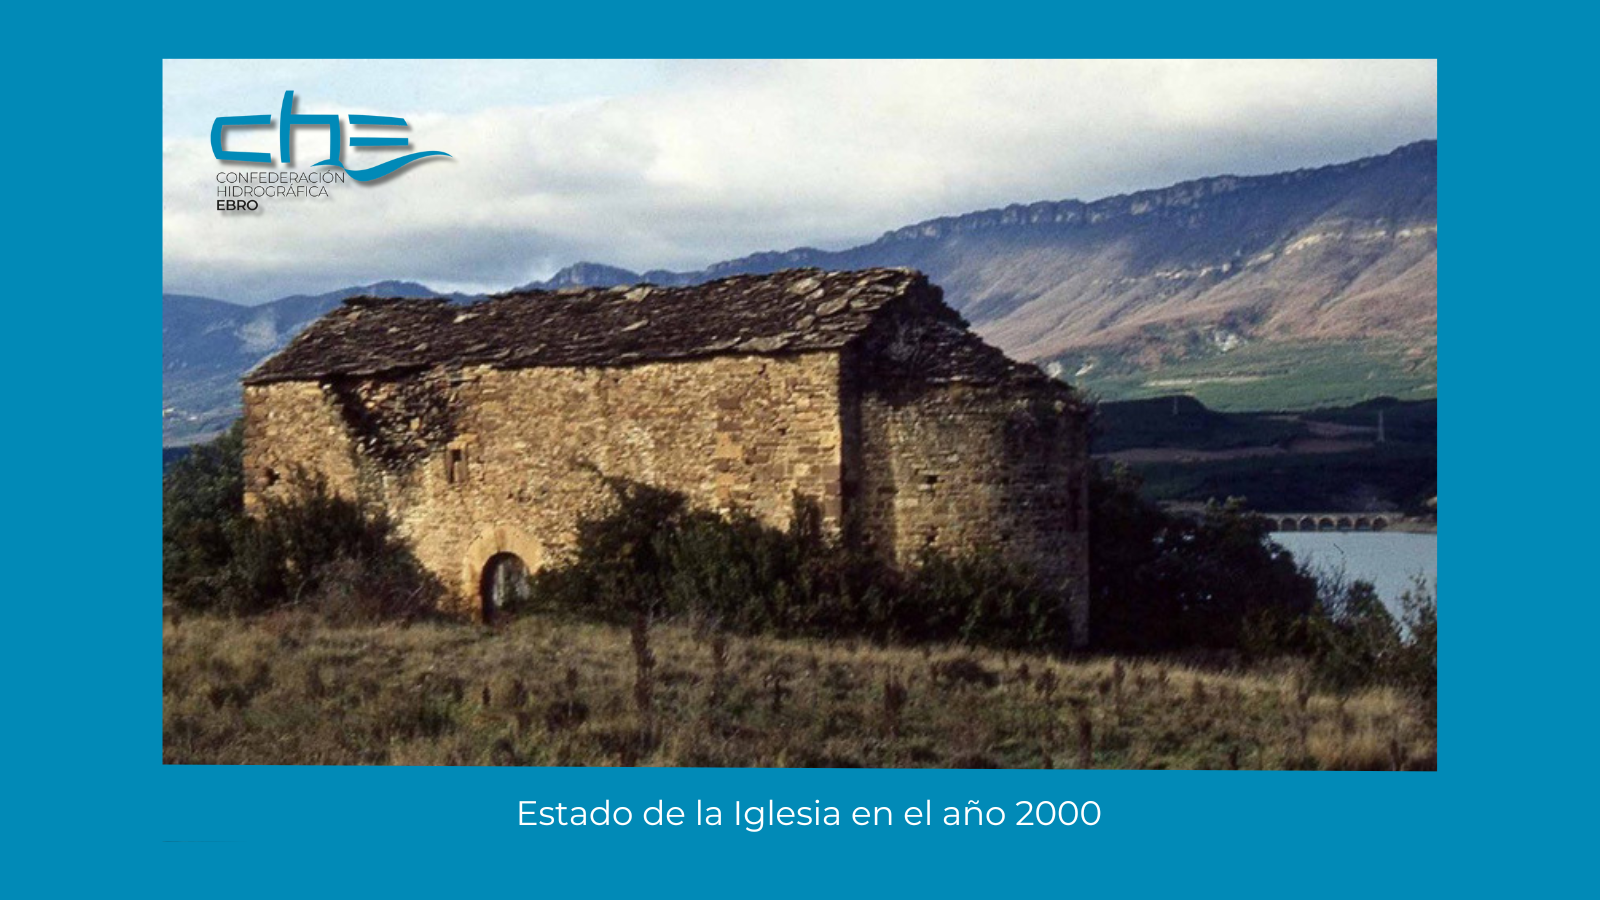 La Confederación Hidrográfica del Ebro realiza una nueva actuación de documentación y restauración - Imagen 2